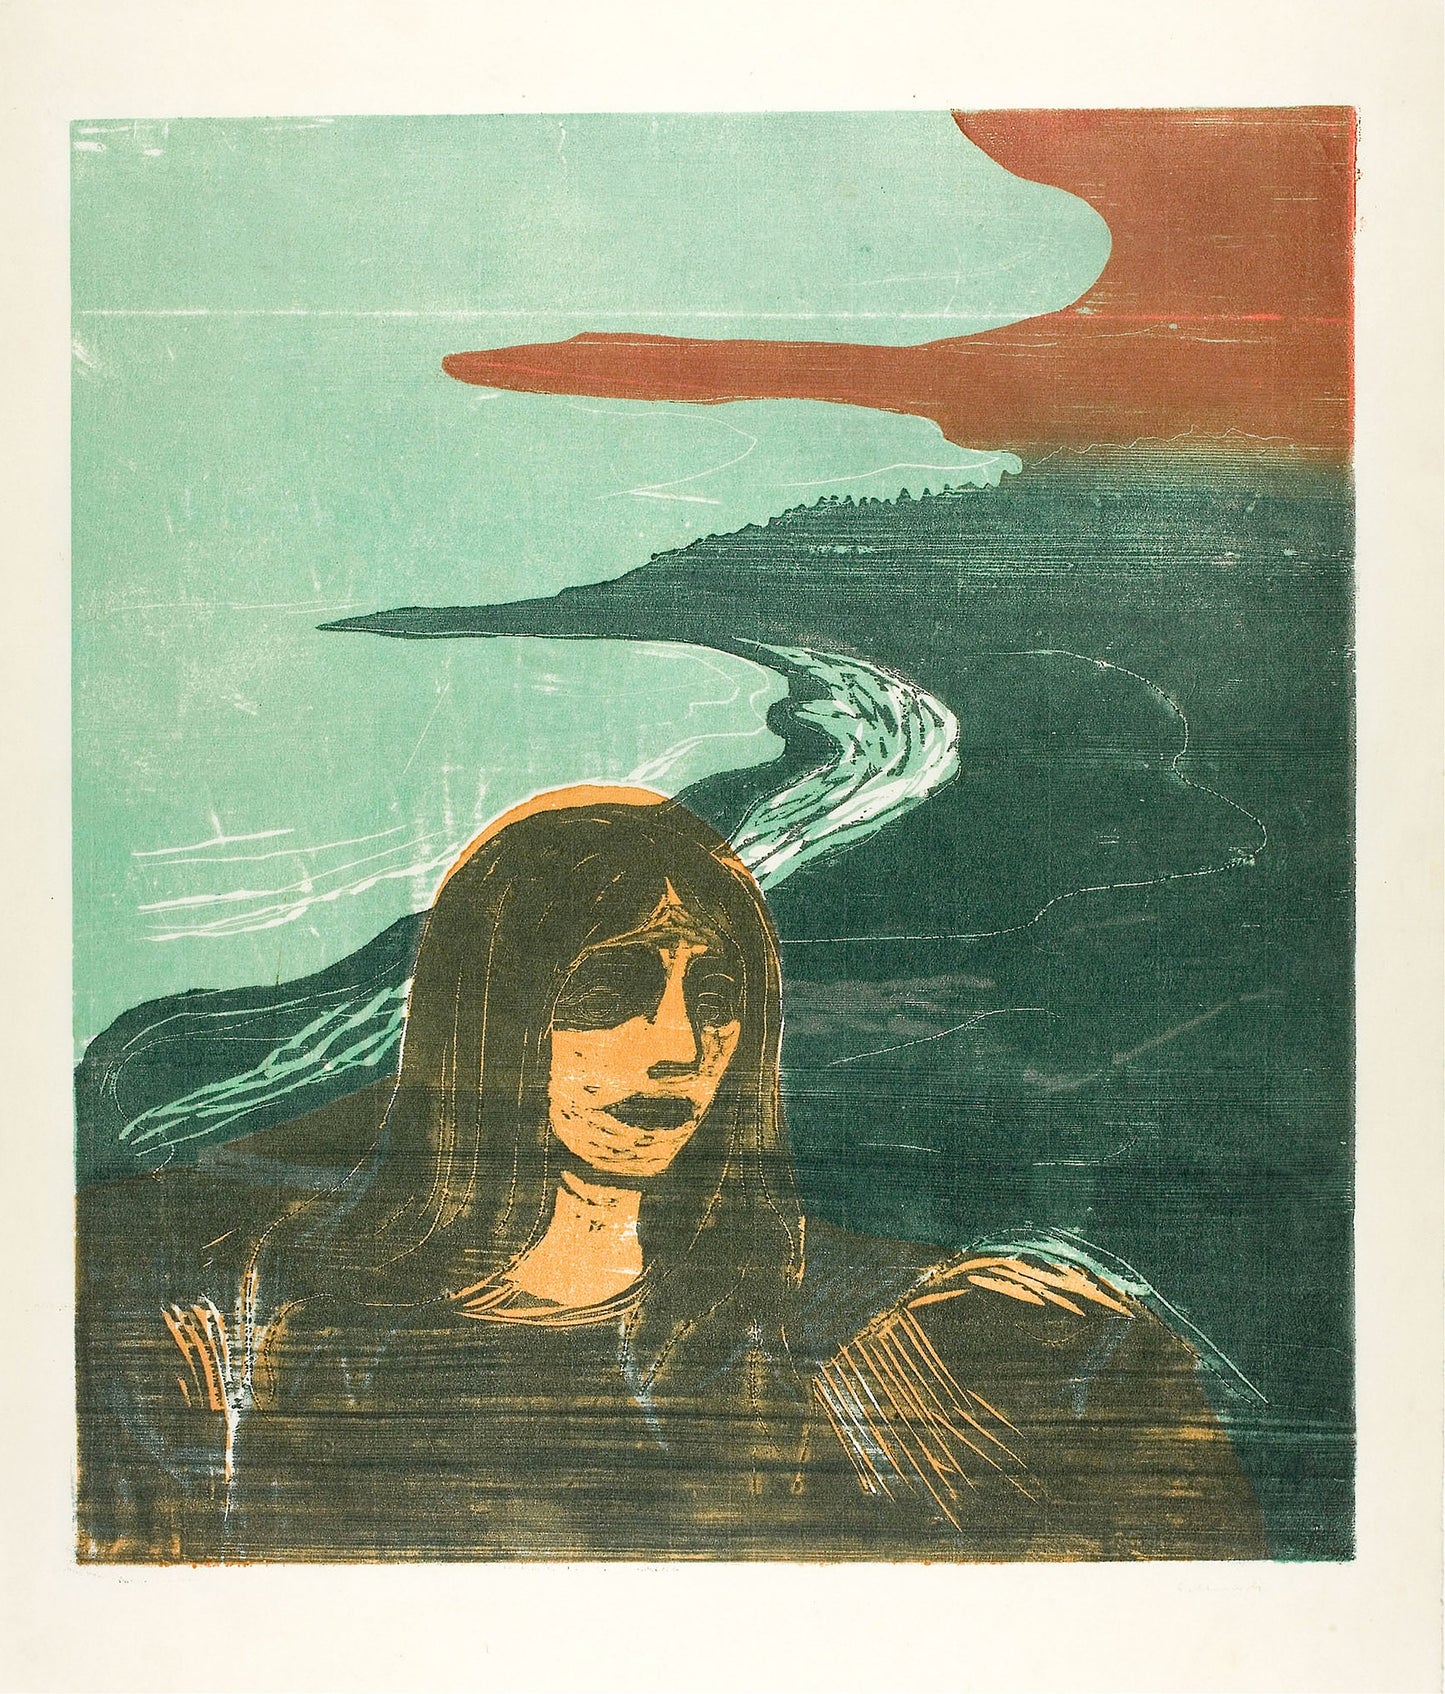 Edvard Munch Symbolist Artworks Set 1 [33 Images]